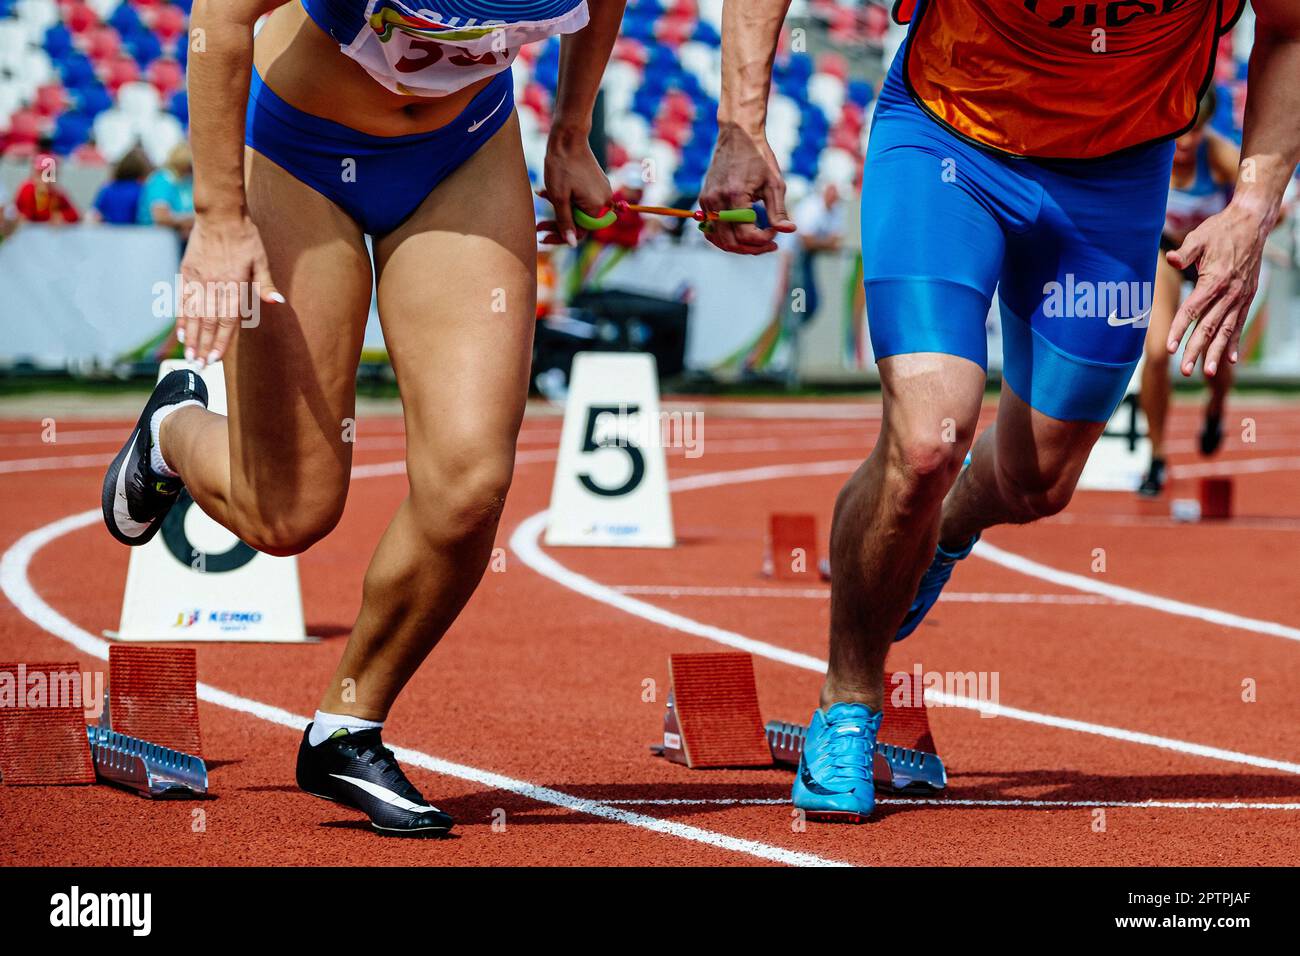 Blinde para-Sportlerin mit männlichem Reiseleiter beginnt das Rennen, Nike Brand Running Spikes Schuhe und blaue Shorts und Strumpfhosen Stockfoto